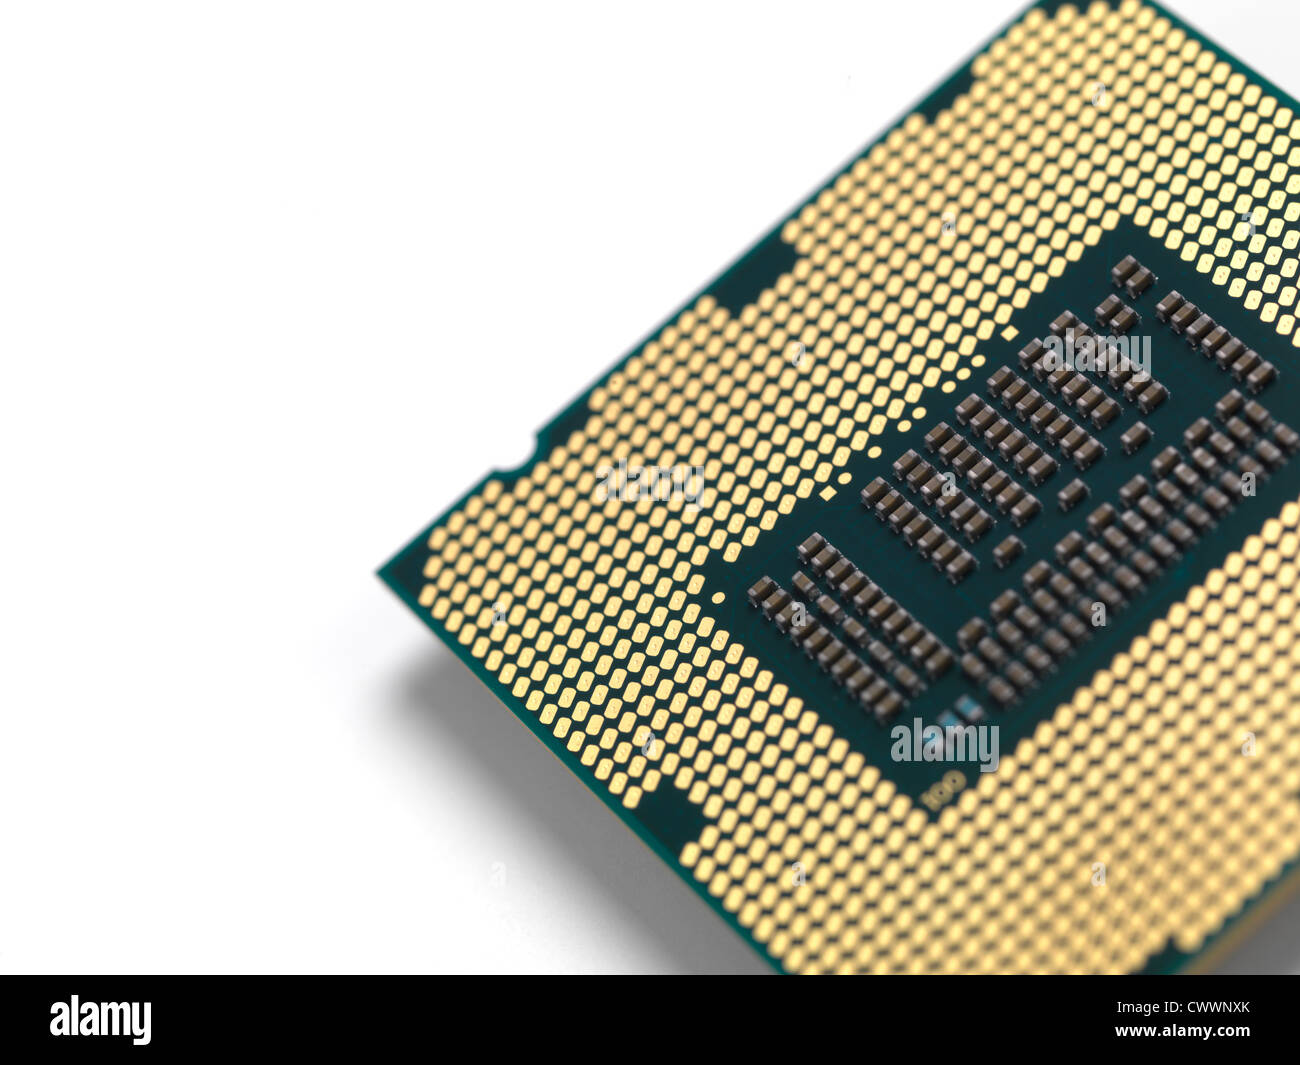 Nahaufnahme von Intel i7 3770K Prozessor mit LGA 1155 CPU Sockel isoliert  auf weißem Hintergrund Stockfotografie - Alamy